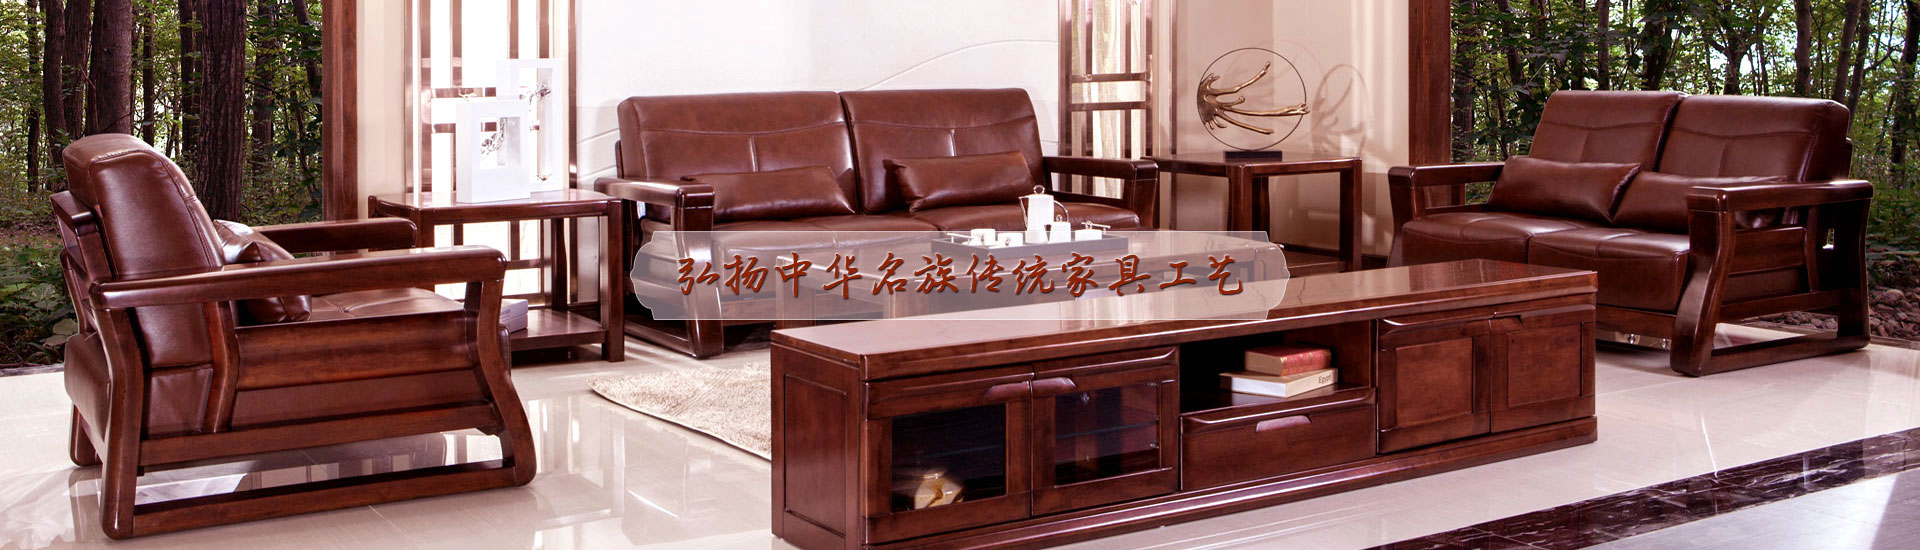 密度板家具价格_板材家具定制-重庆云轩家具有限公司